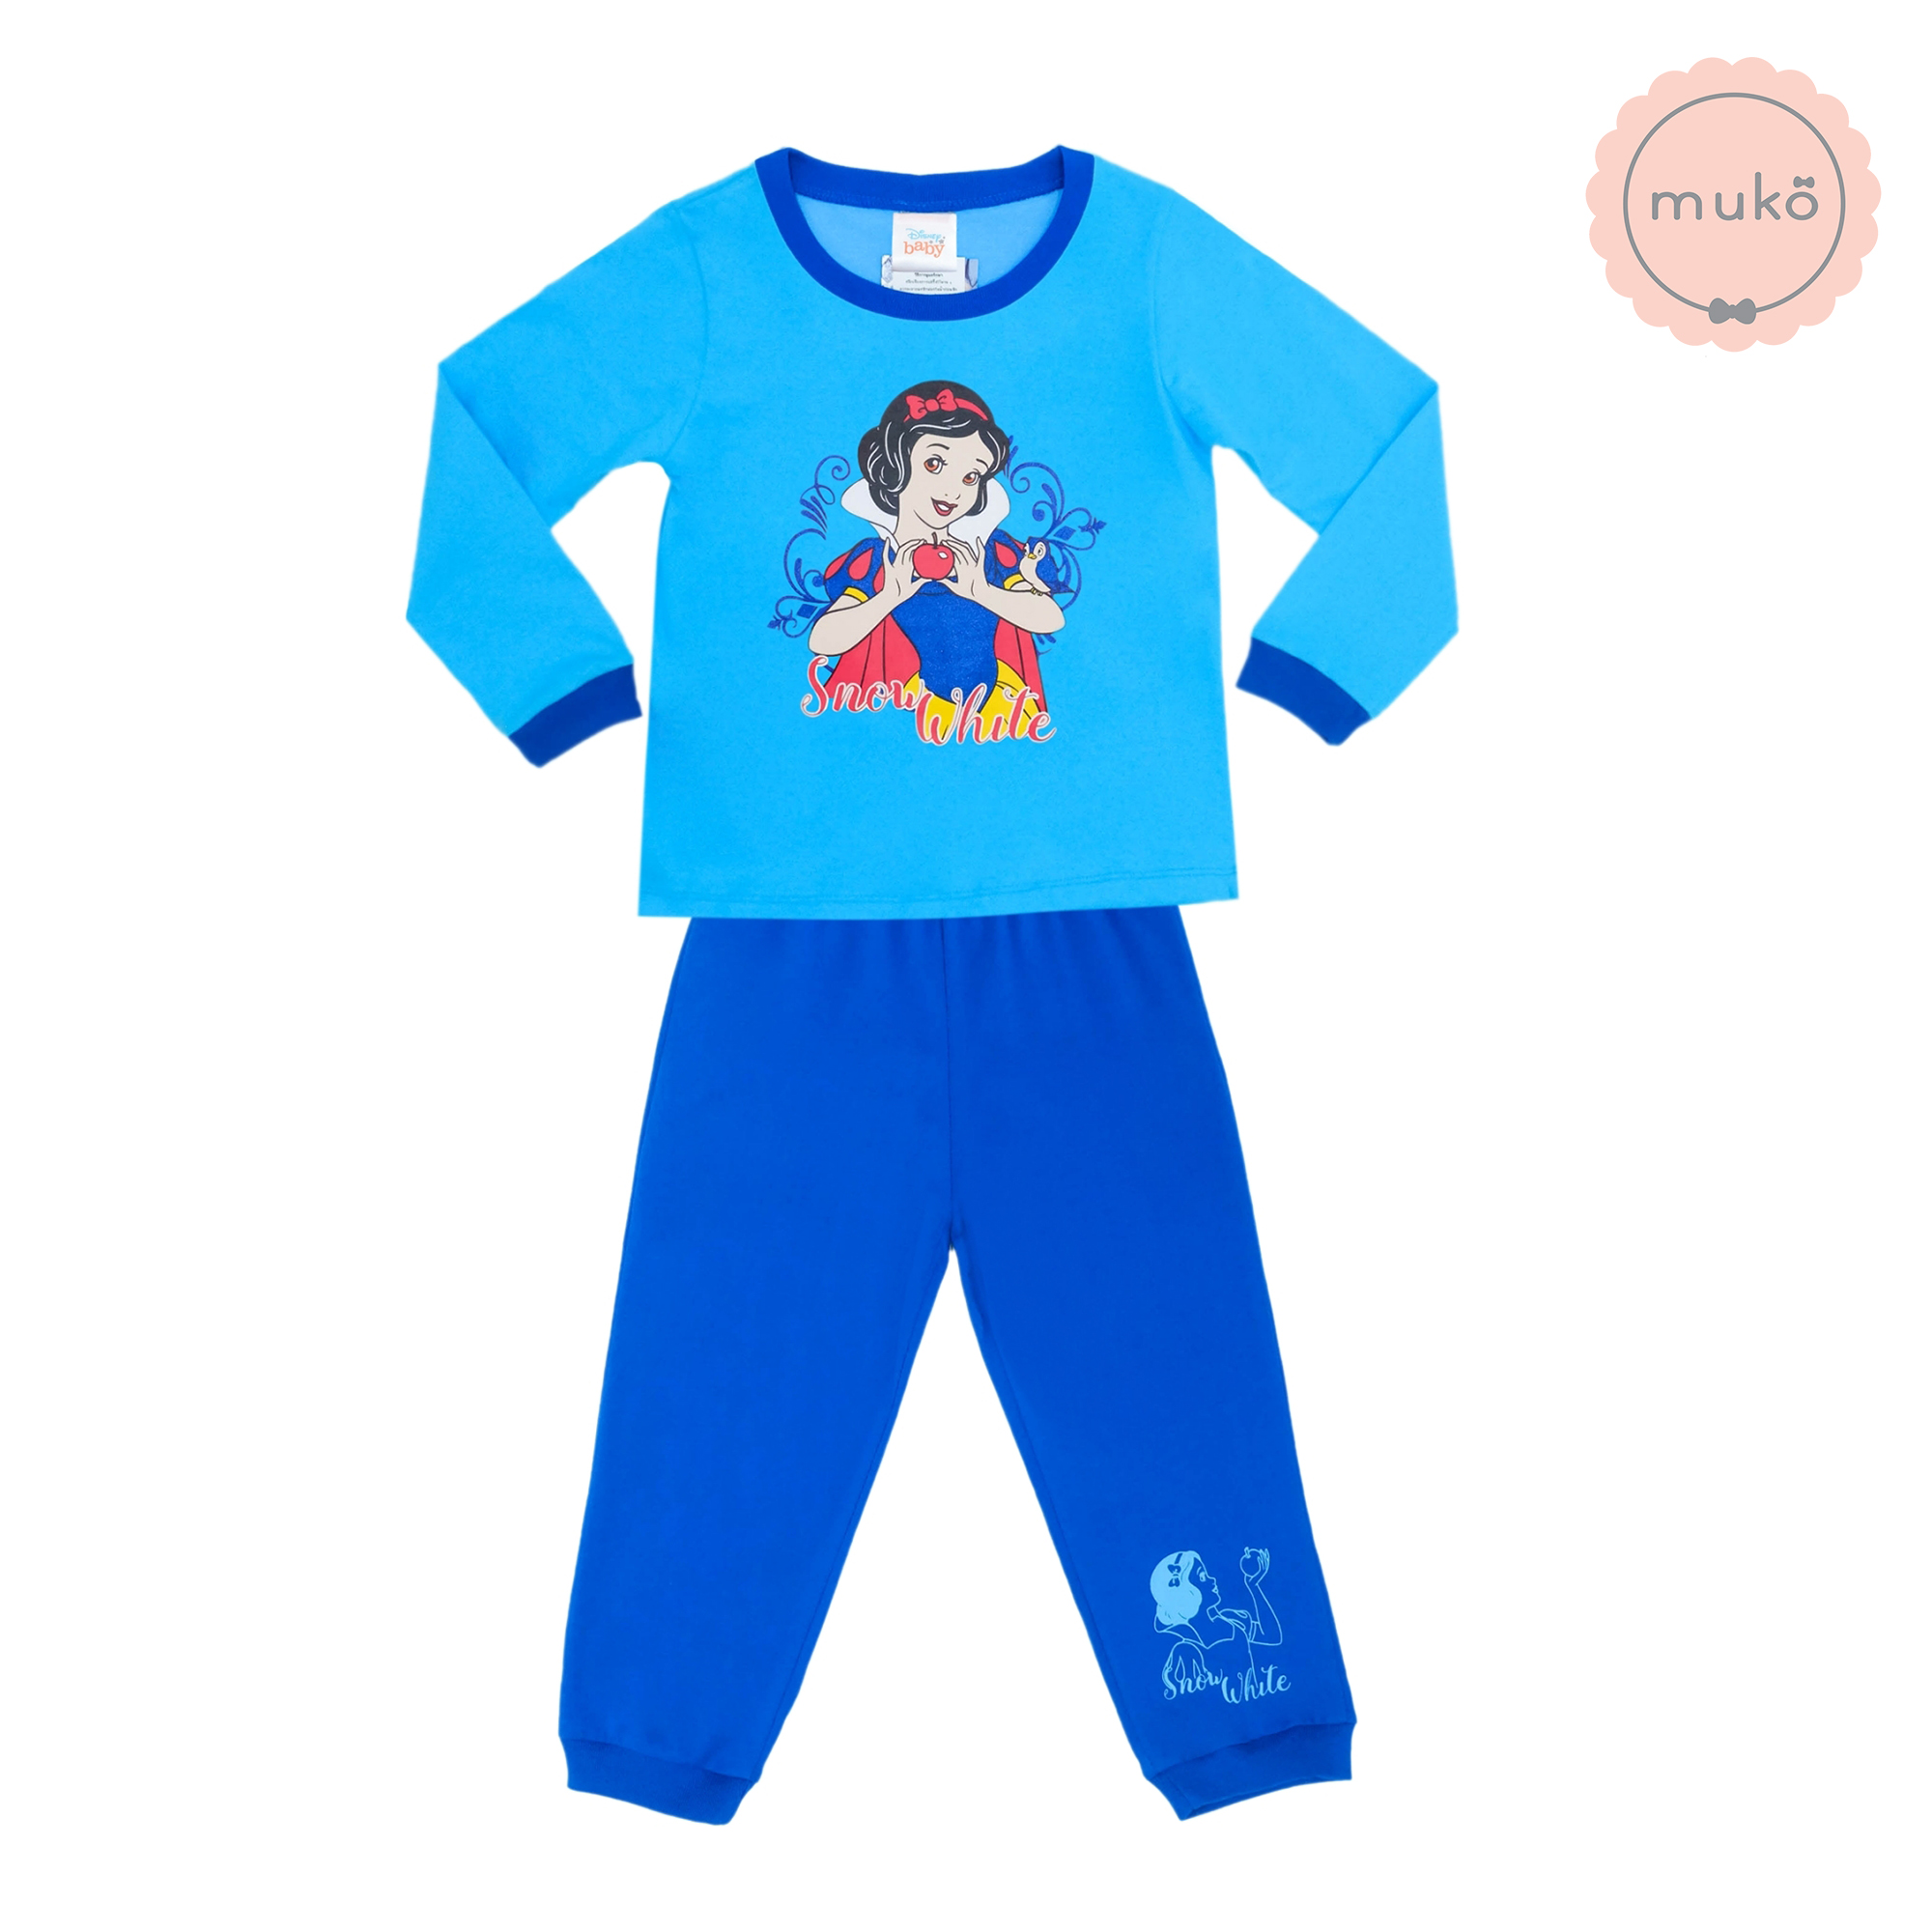 ชุดเด็ก 6 เดือน - 1 ขวบ แขนยาว-ขายาว (Size 1) DPC127-02-3-Blue 1 ลายเจ้าหญิงสโนไวท์ Snow white สีฟ้า (เสื้อฟ้ากางเกงน้ำเงิน)